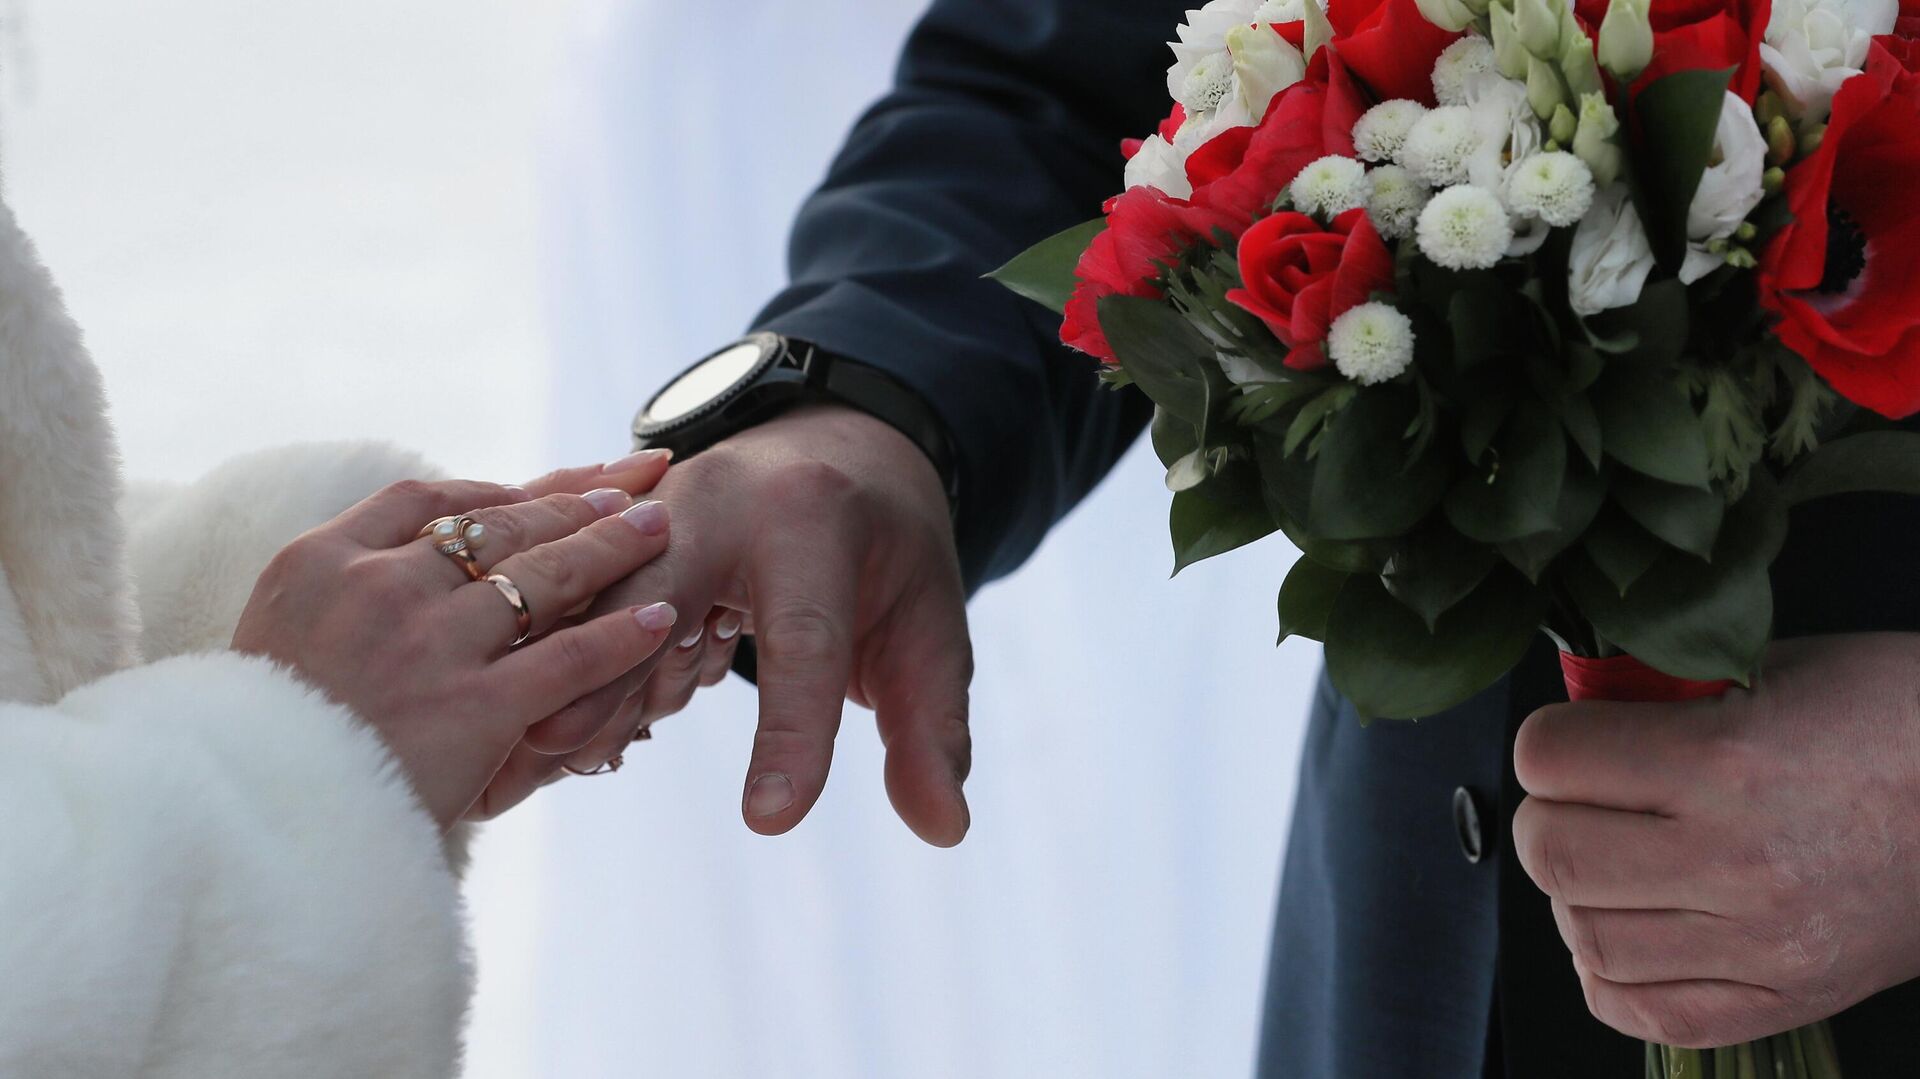 Регистрация браков в необычных местах в День всех влюбленных - Sputnik Таджикистан, 1920, 15.03.2022